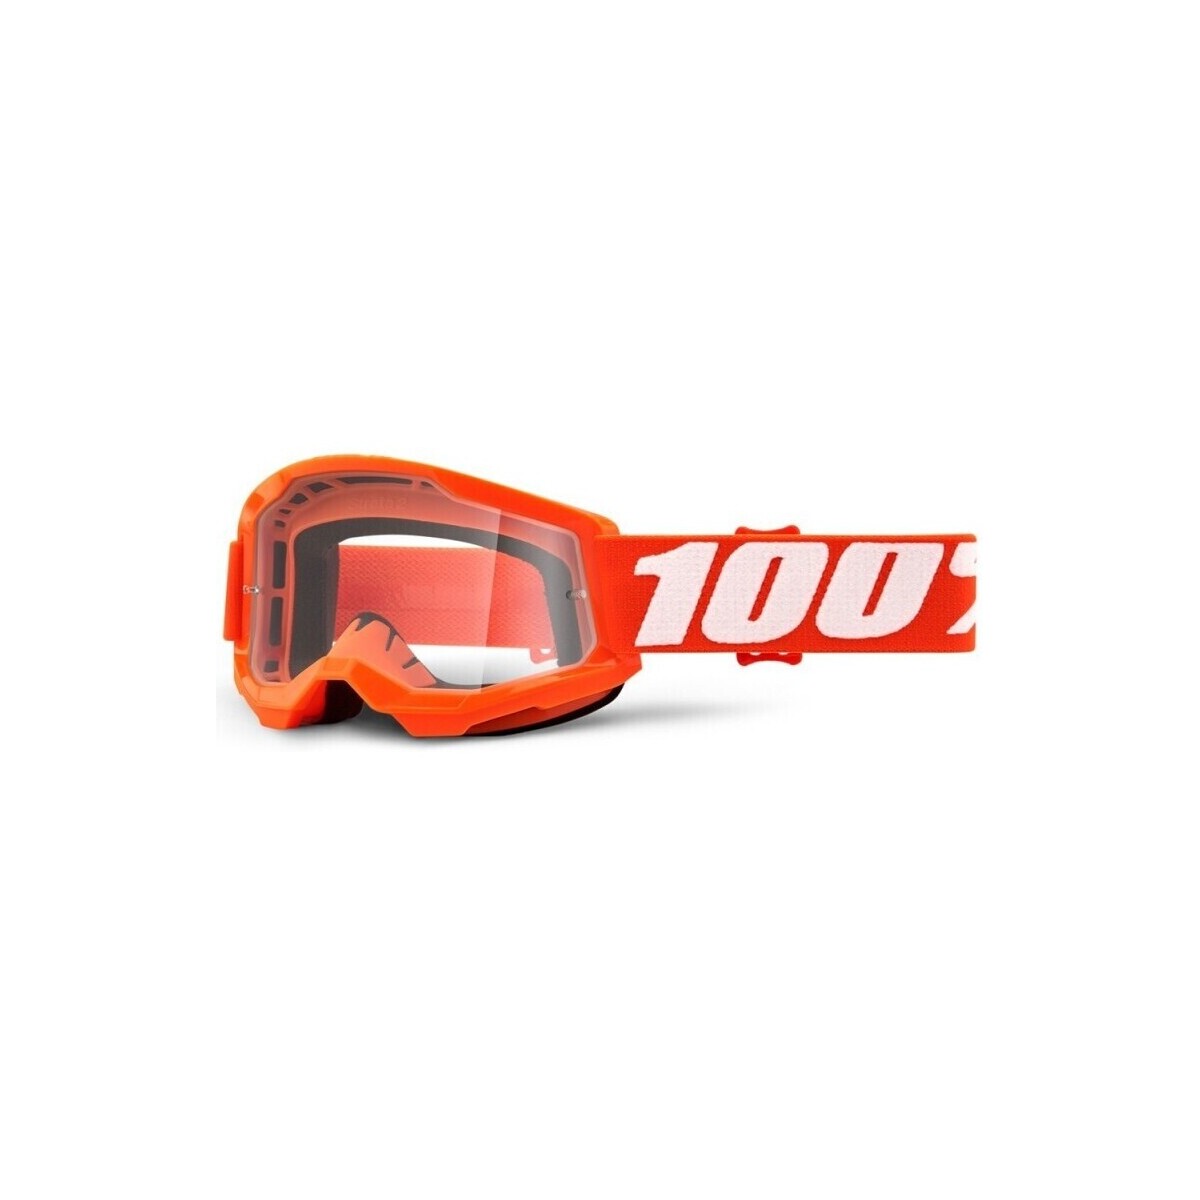 Accessoires Accessoires sport 100 % Feminin 100% Masque VTT Junior Strata 2 - Orange Orange